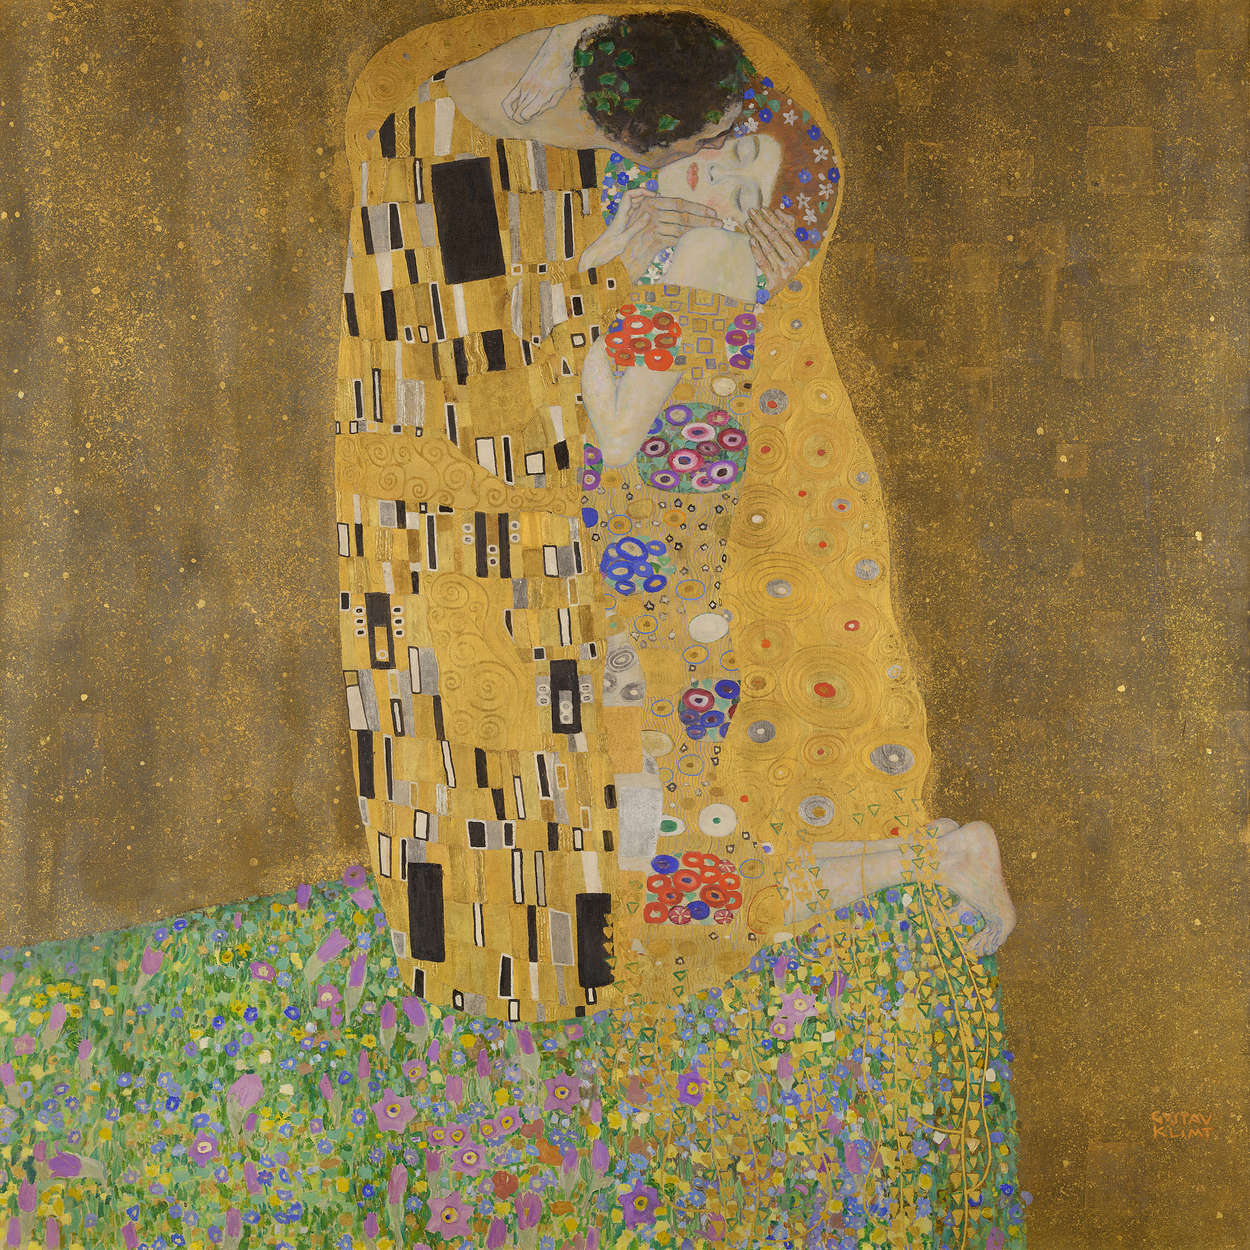             Il murale "Il bacio" di Gustav Klimt
        